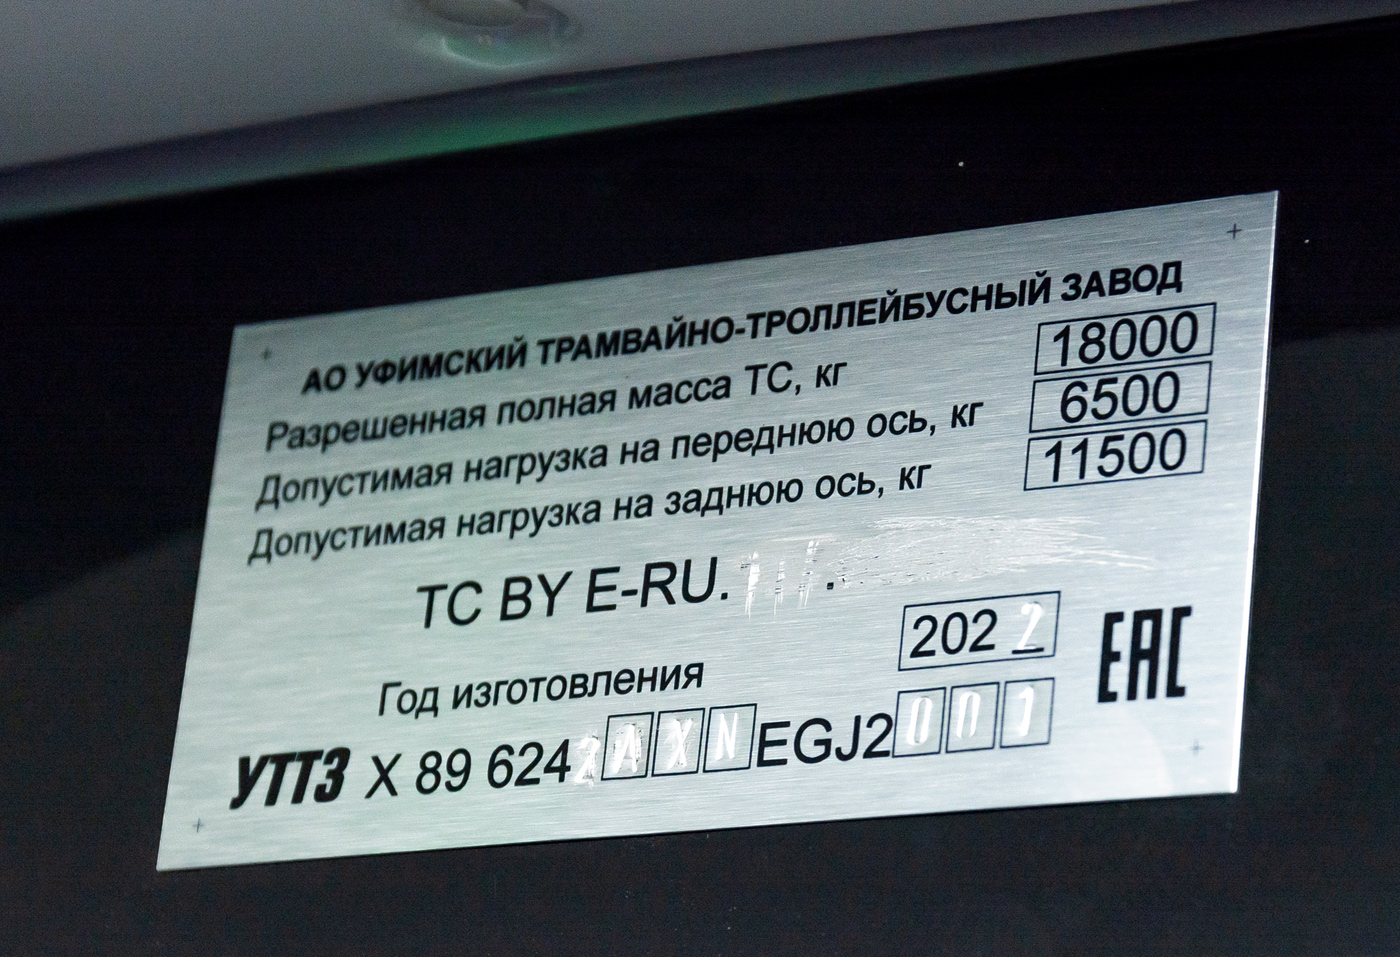 Ufa, UTTZ-6242 № 6242; Ufa — Nameplates; Ufa — New BTZ trolleybuses